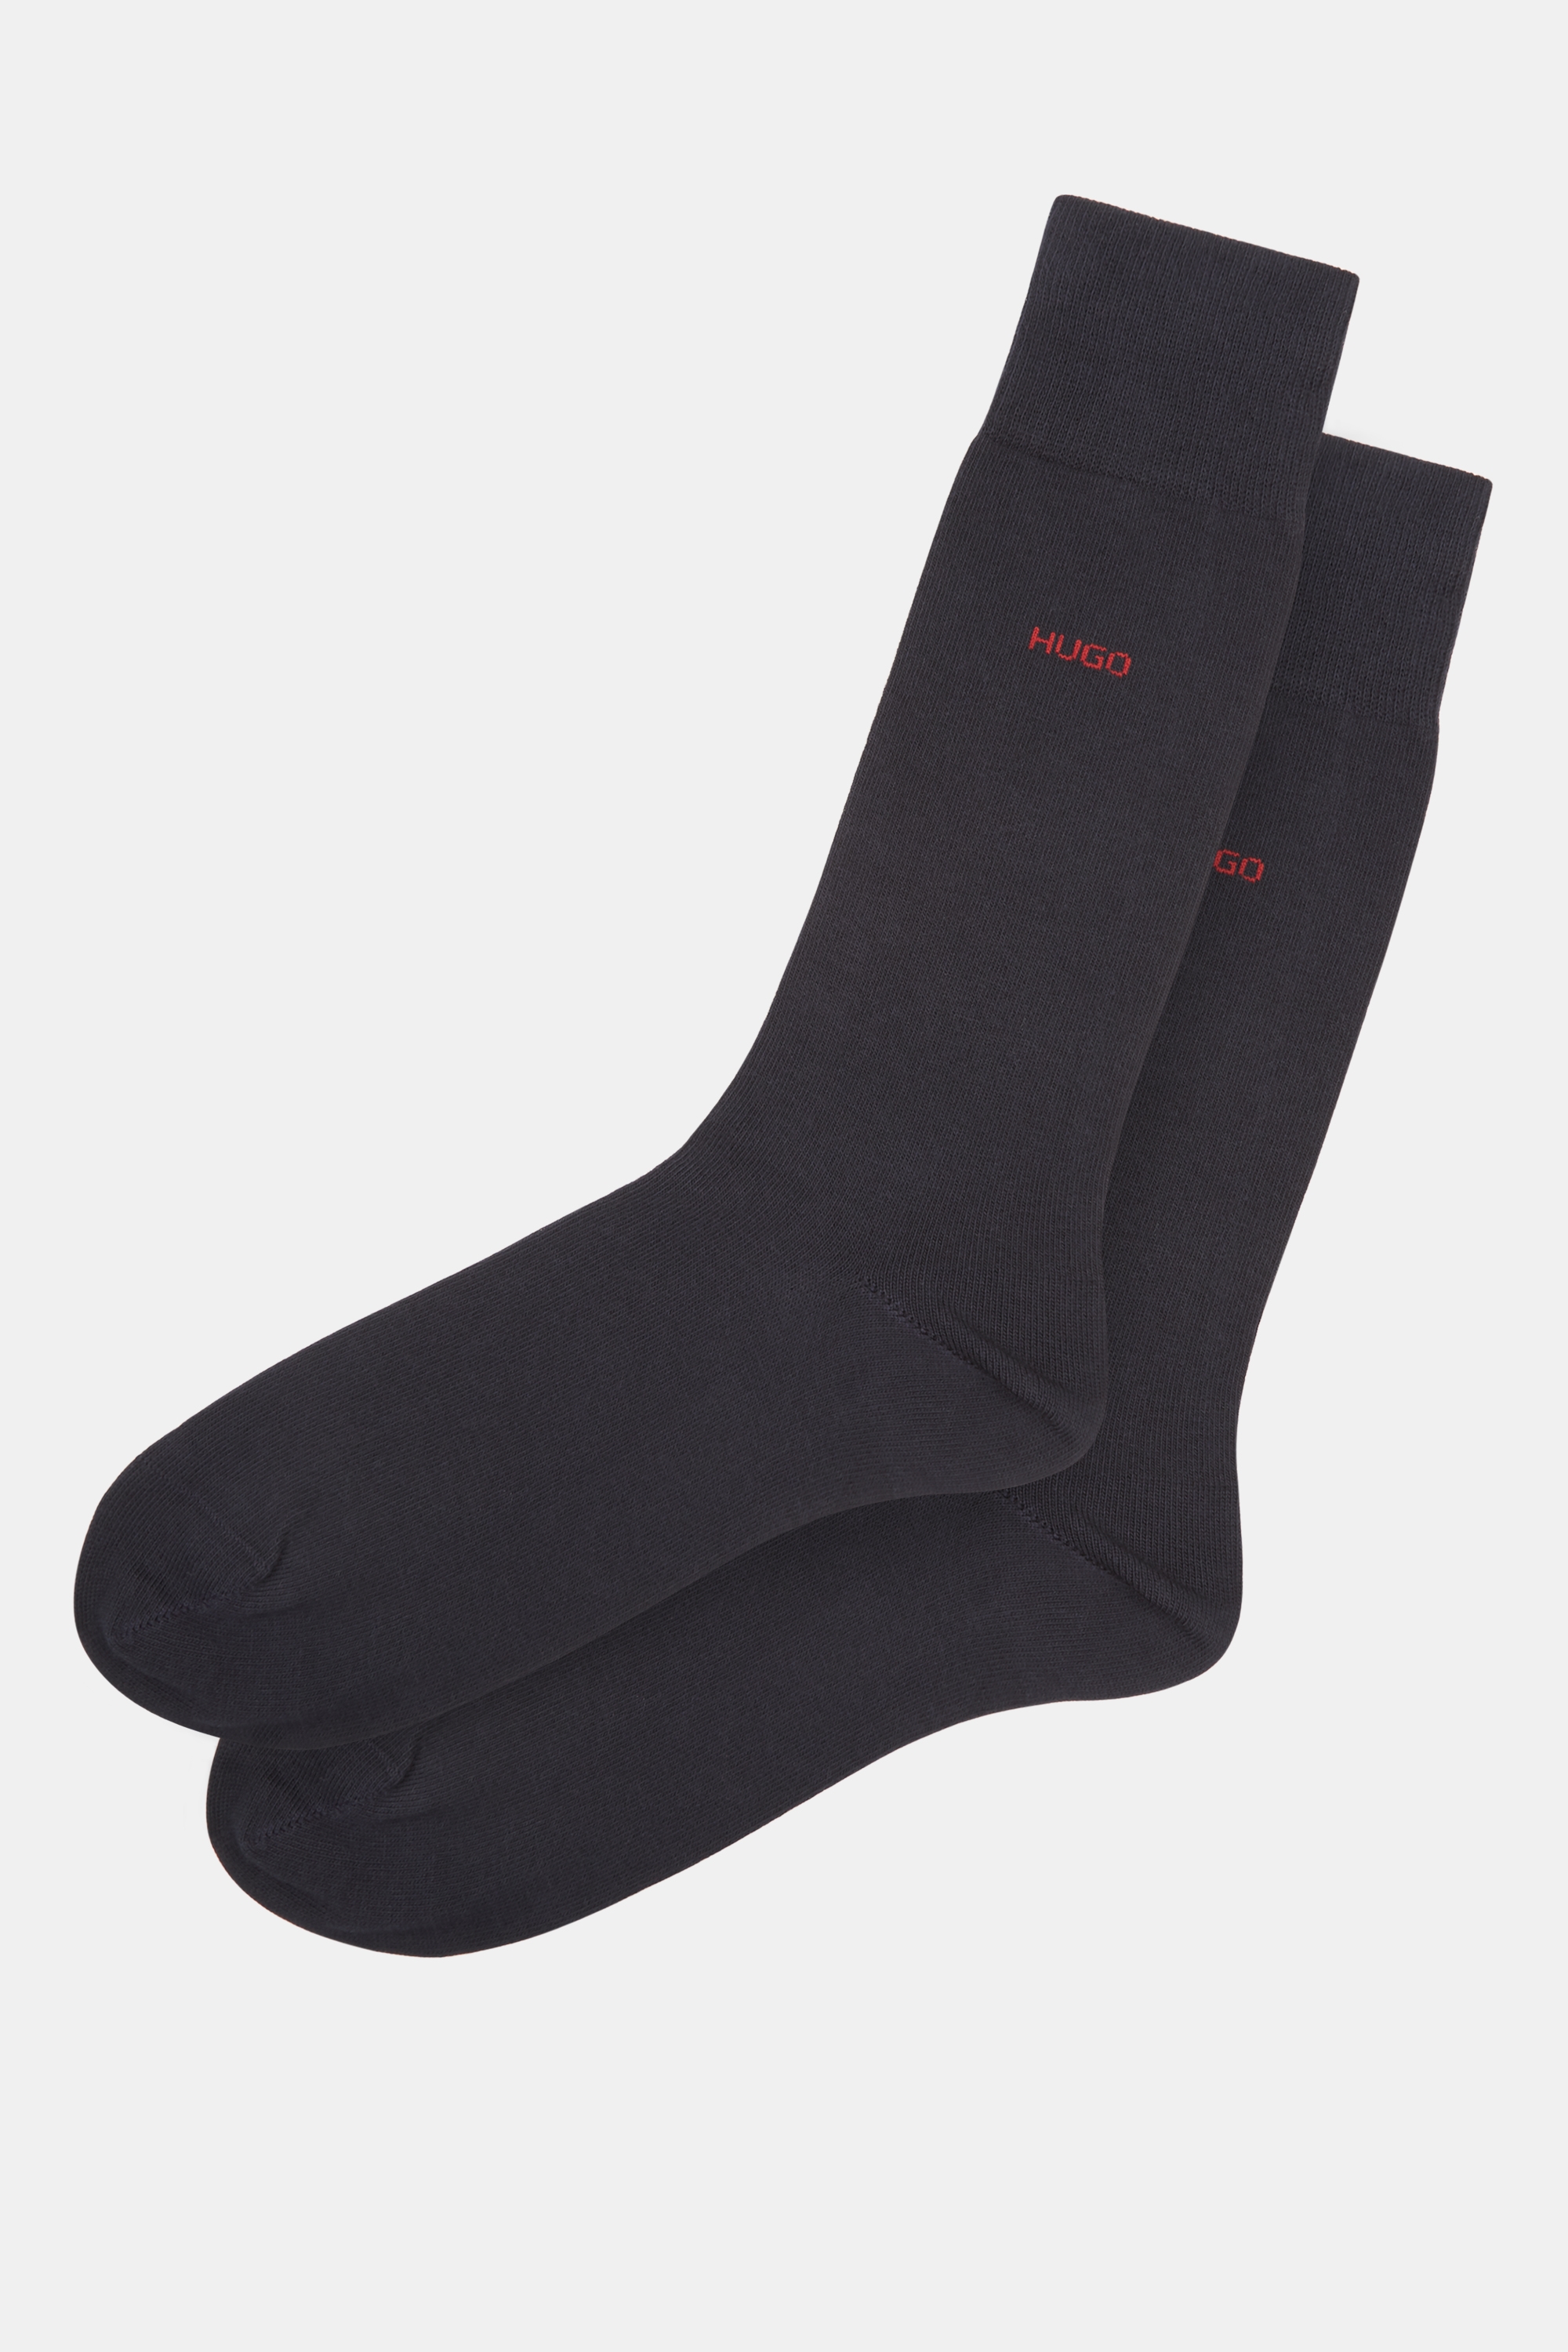 Hugo Boss Black 2 Pack Socks